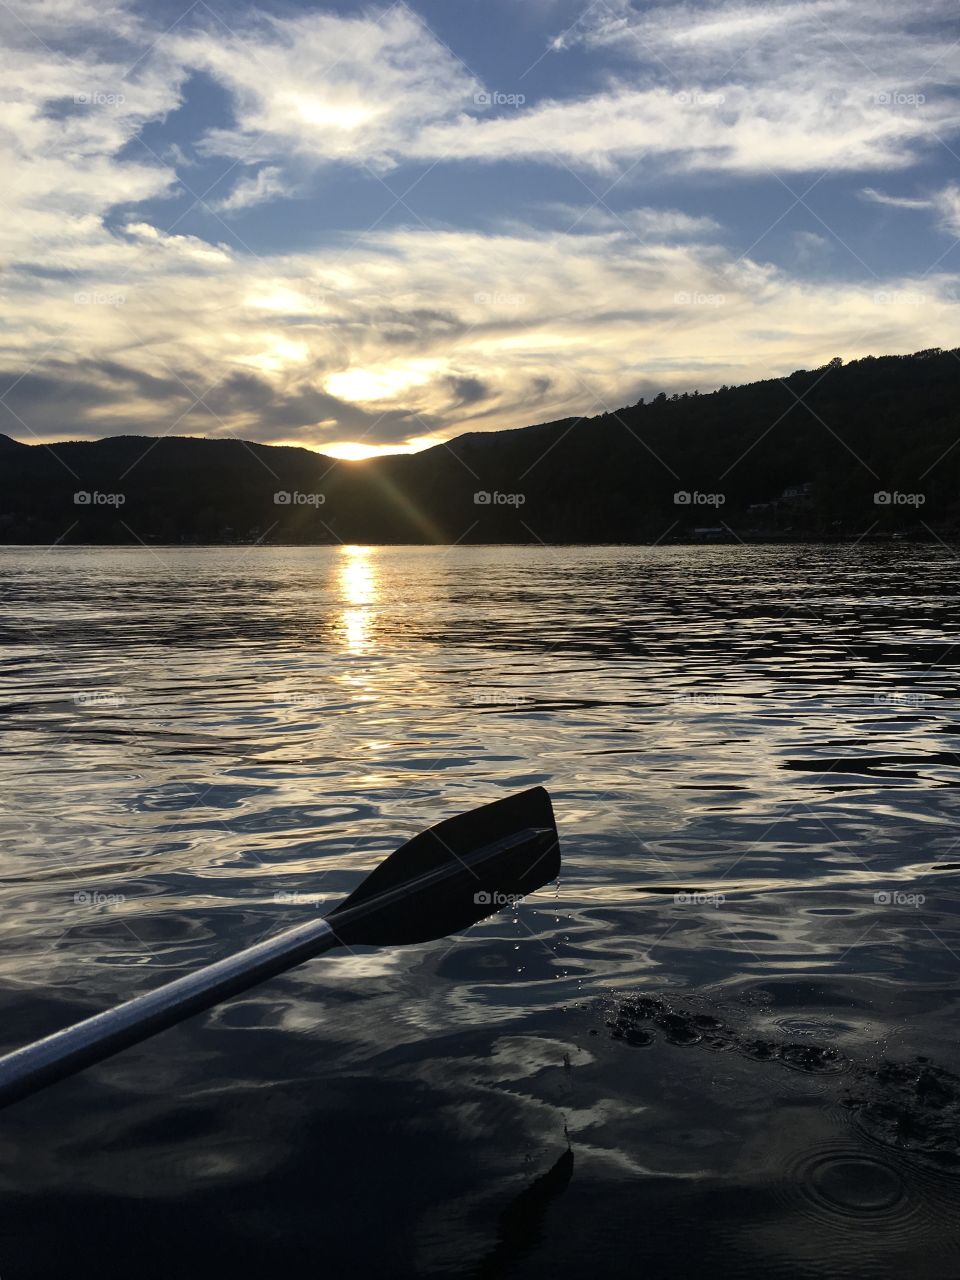 Paddling along the lake at sunset